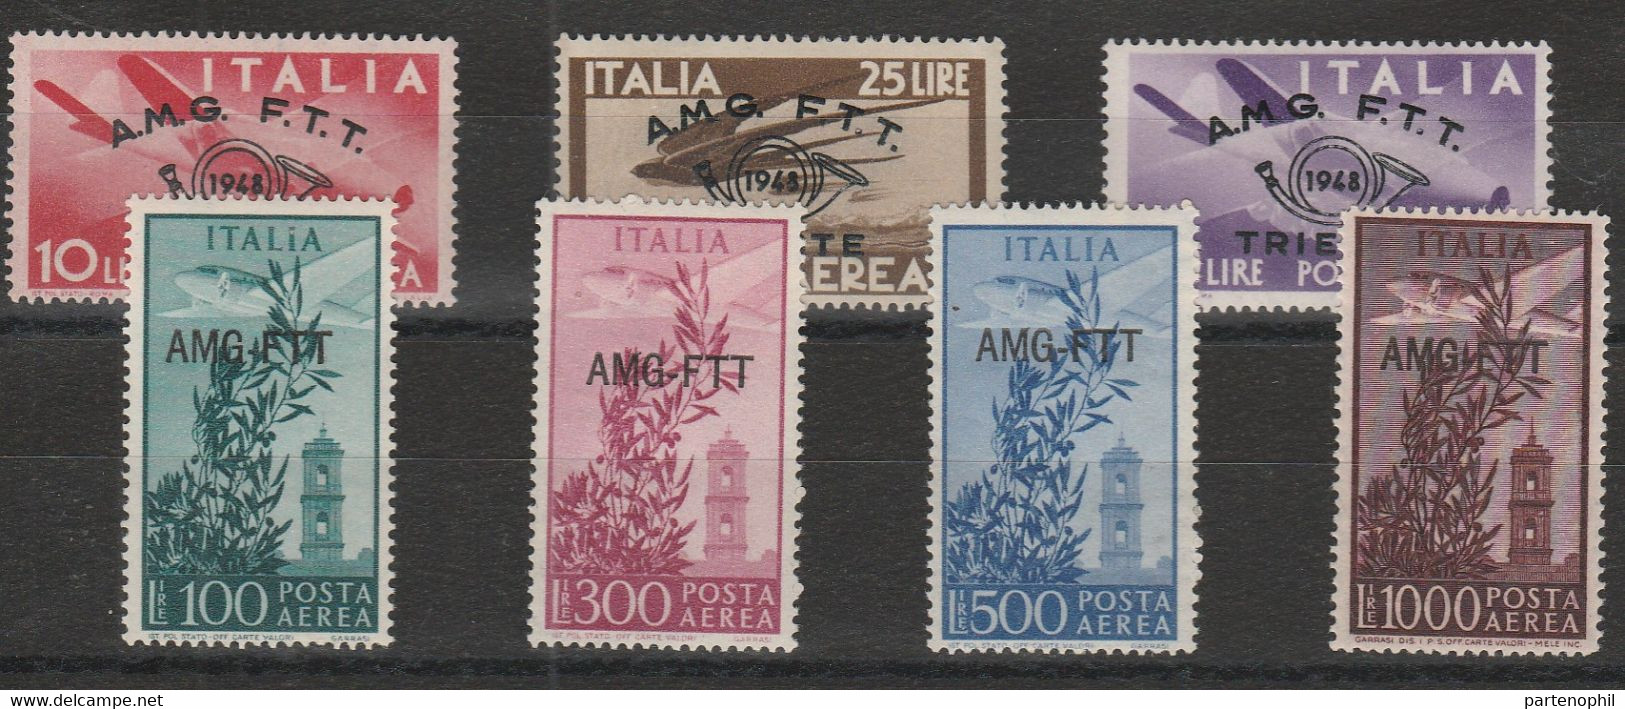 247 - Trieste A Posta Aerea 1949 - Campidoglio N. P.a. 20/26. Cat. € 220,00. SPL MNH - Airmail